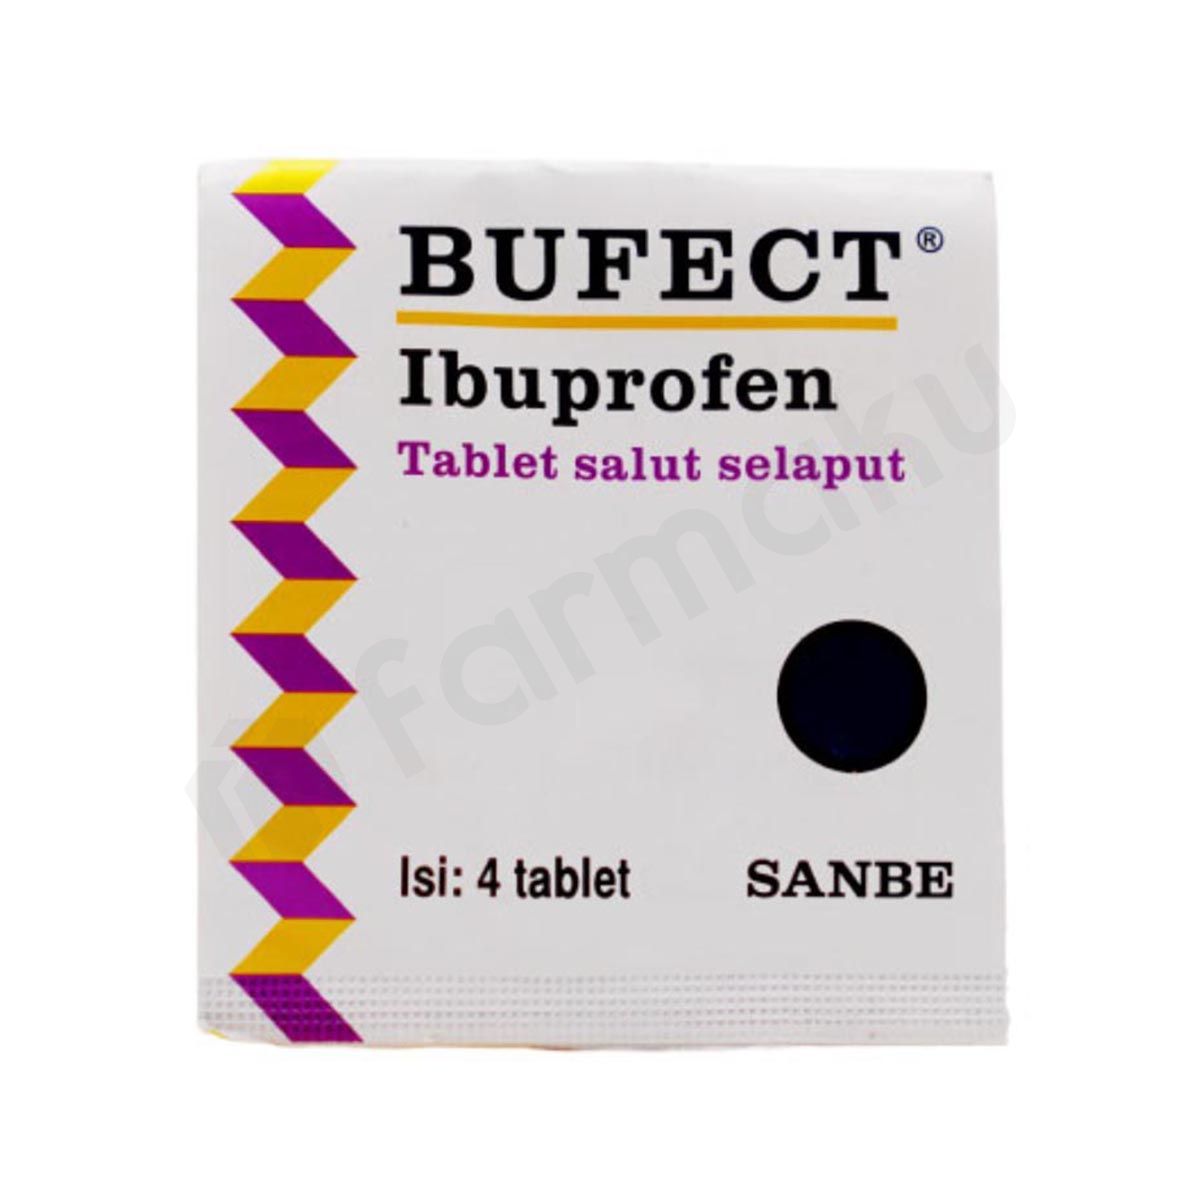 Buffect Ibuprofen